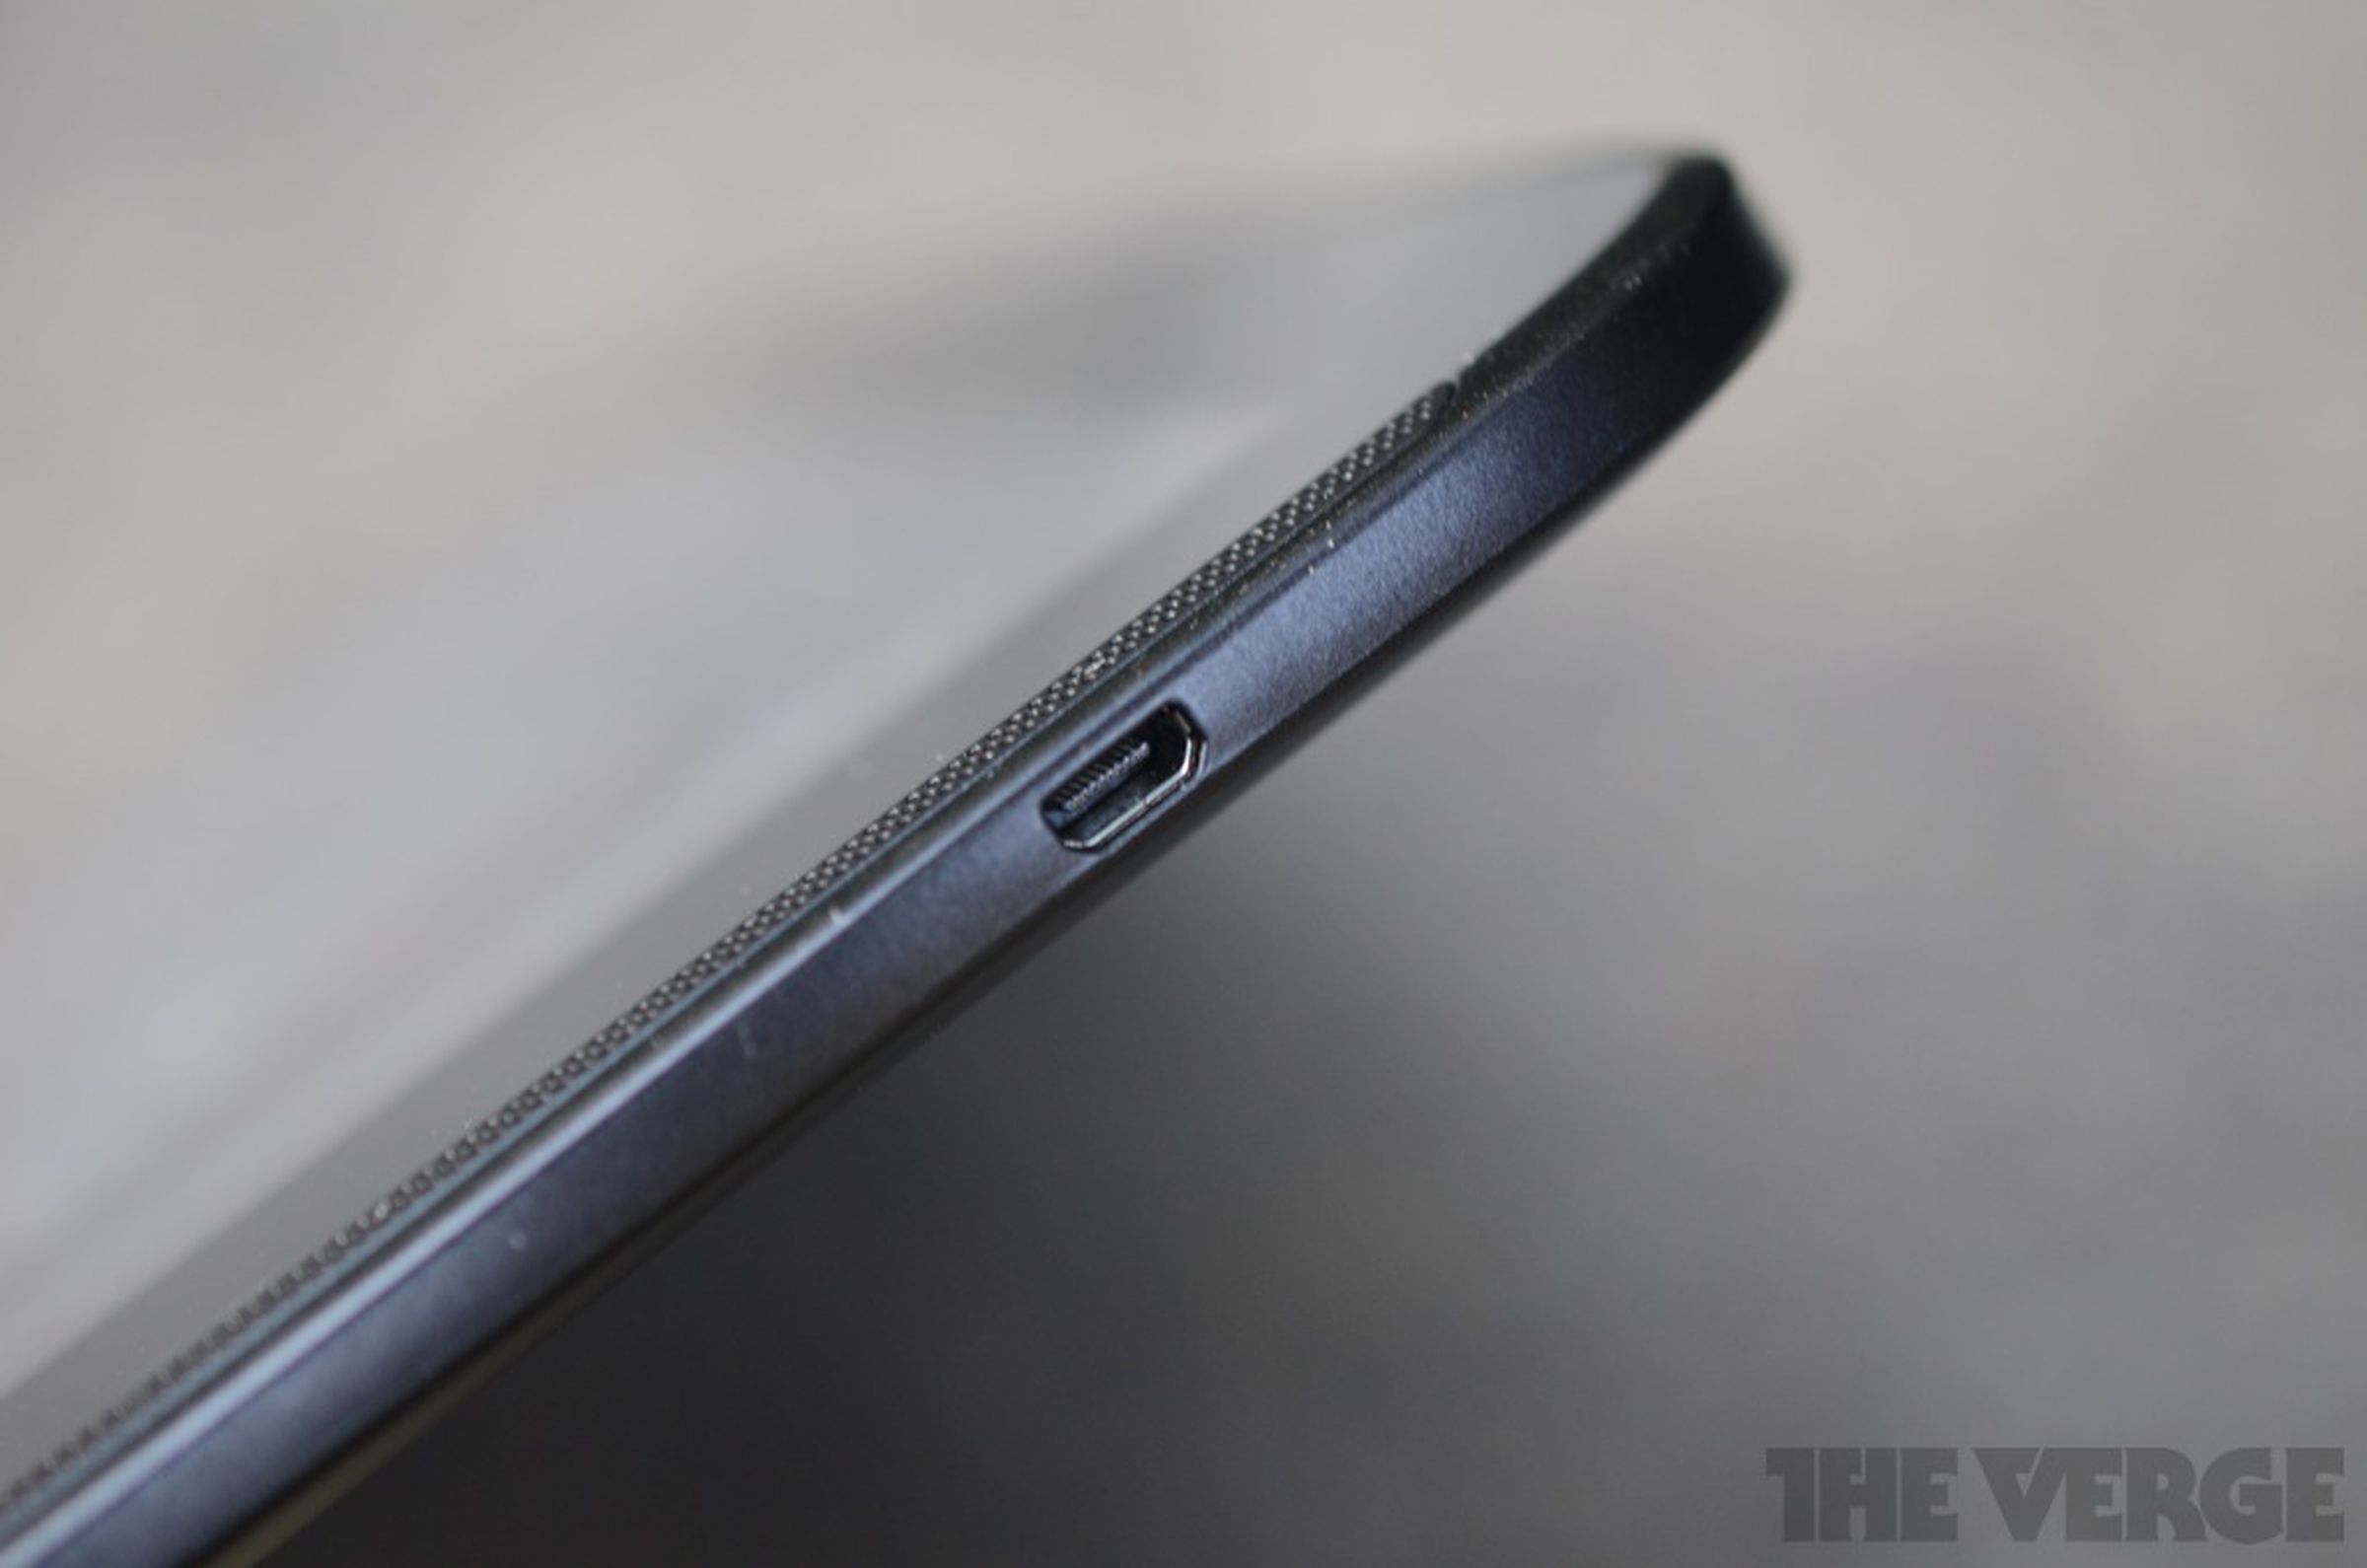 Google Nexus 10 hands-on pictures